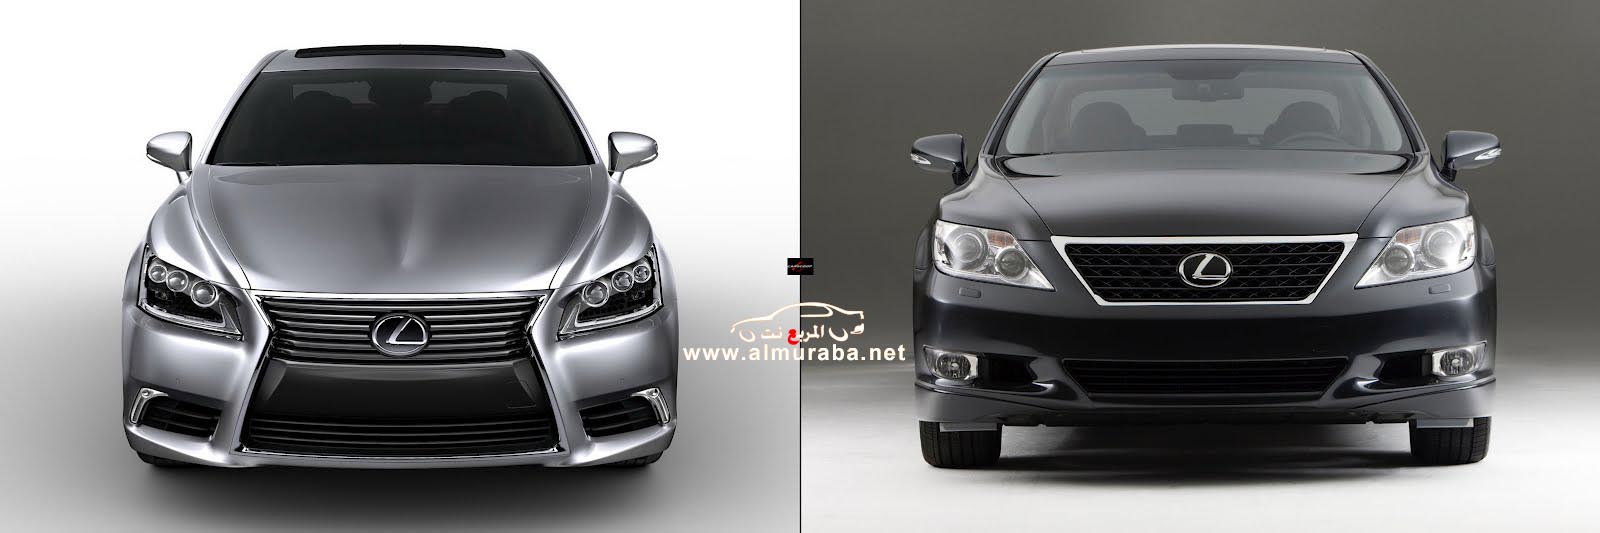 لكزس ال اس 460 2013 سبورت في صور تشويقية جديدة نشرتها لكزس مع المقارنة Lexus LS460 90